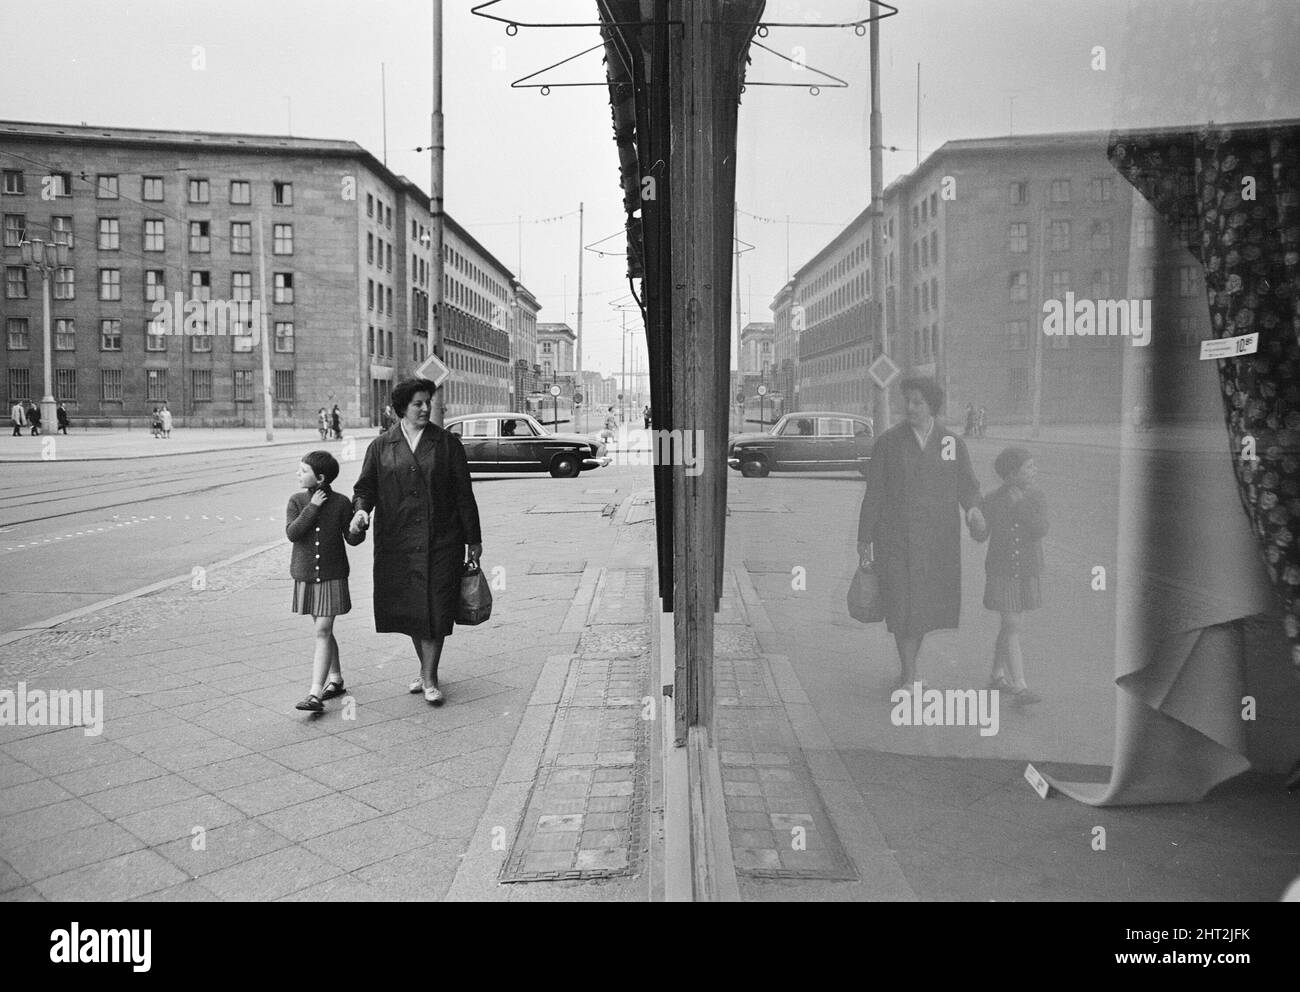 Szenen in Ost-Berlin, vier Jahre nach Beginn der Arbeiten am Bau der Berliner Mauer, die Ost und West trennt. 26. Mai 1965. Stockfoto